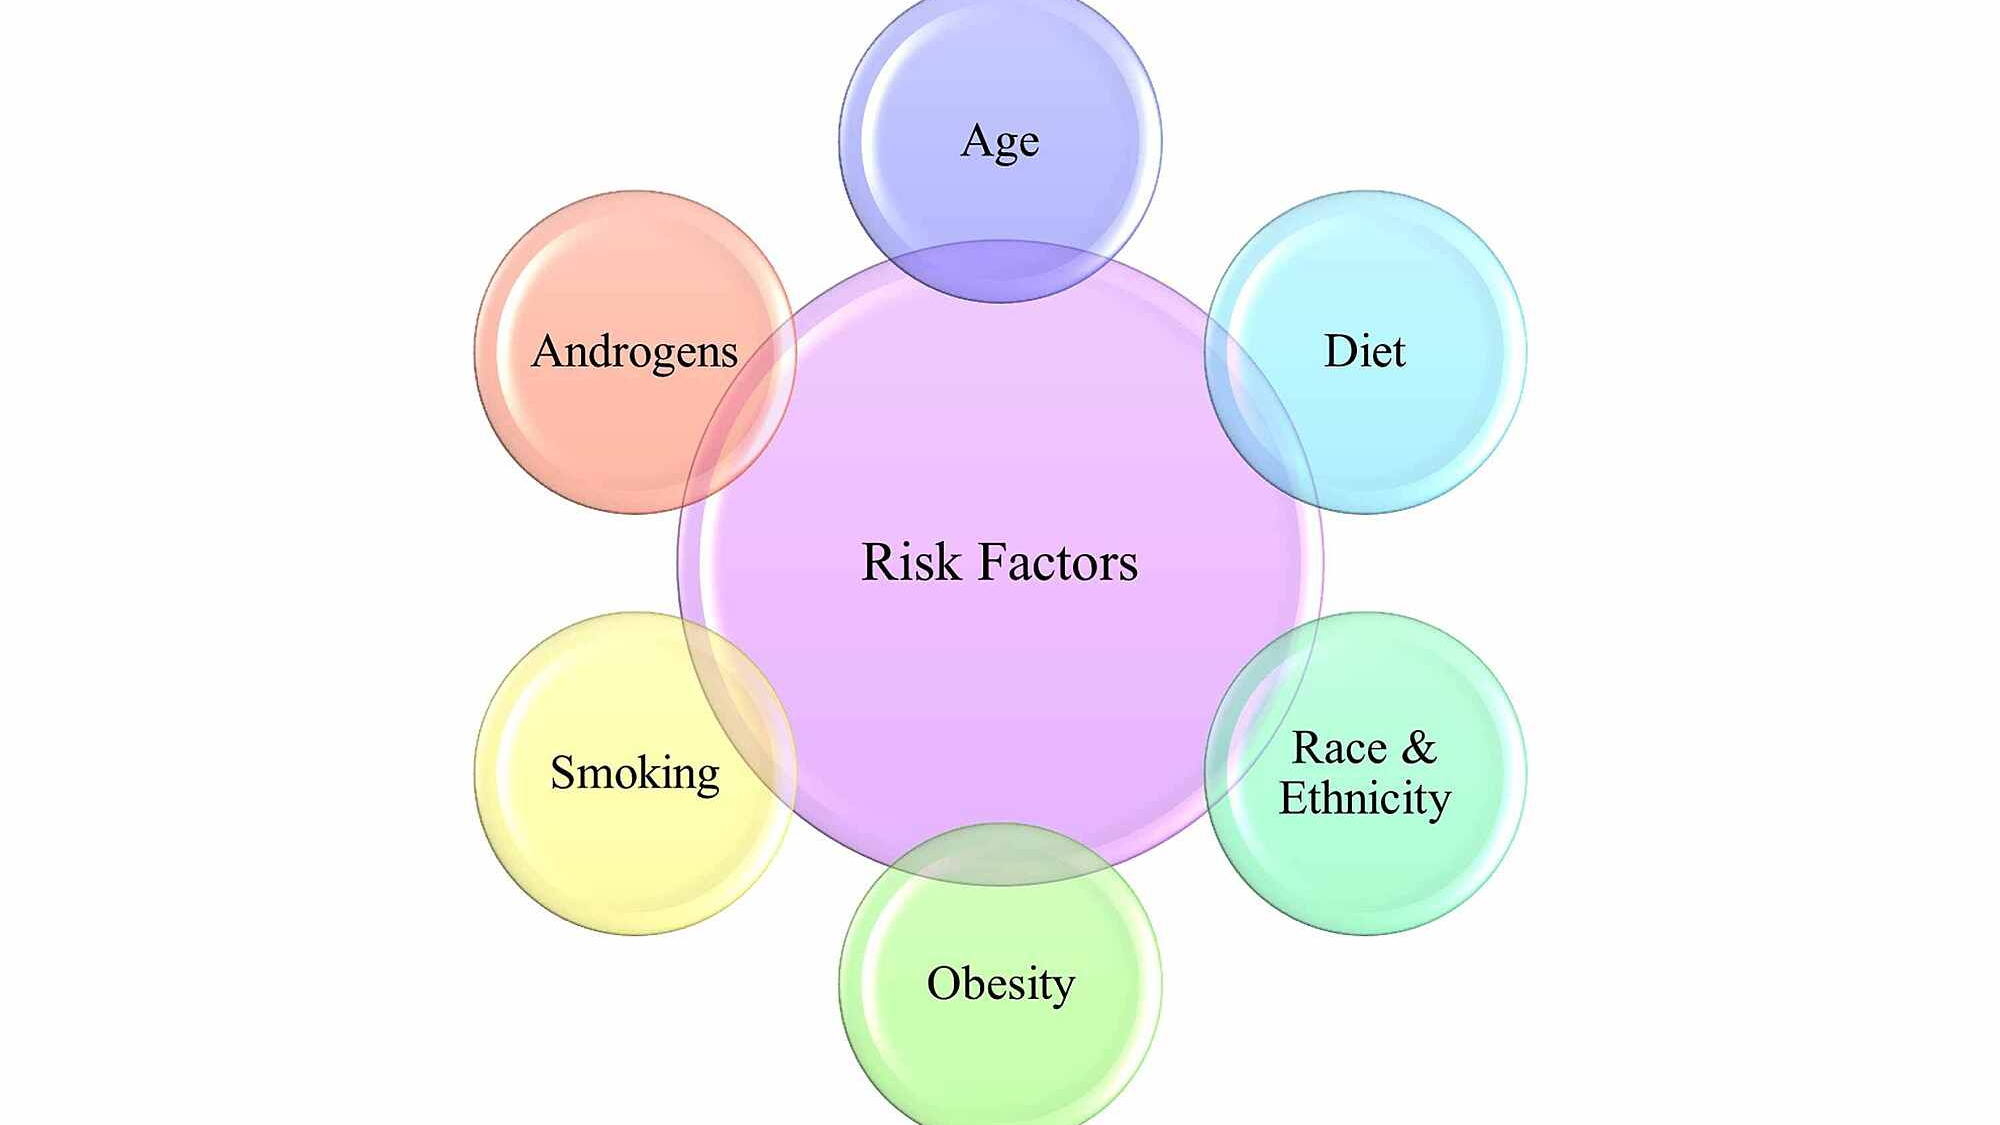 عامل خطر هر چیزی است که خطر ابتلا به بیماری را افزایش دهد. سرطان های مختلف عوامل خطر متفاوتی دارند ( مانند سرطان پروستات ). برخی از عوامل خطر مانند سیگار کشیدن قابل تغییر هستند. موارد دیگر ، مانند سن یا سابقه خانوادگی شخص ، قابل تغییر نیستند.